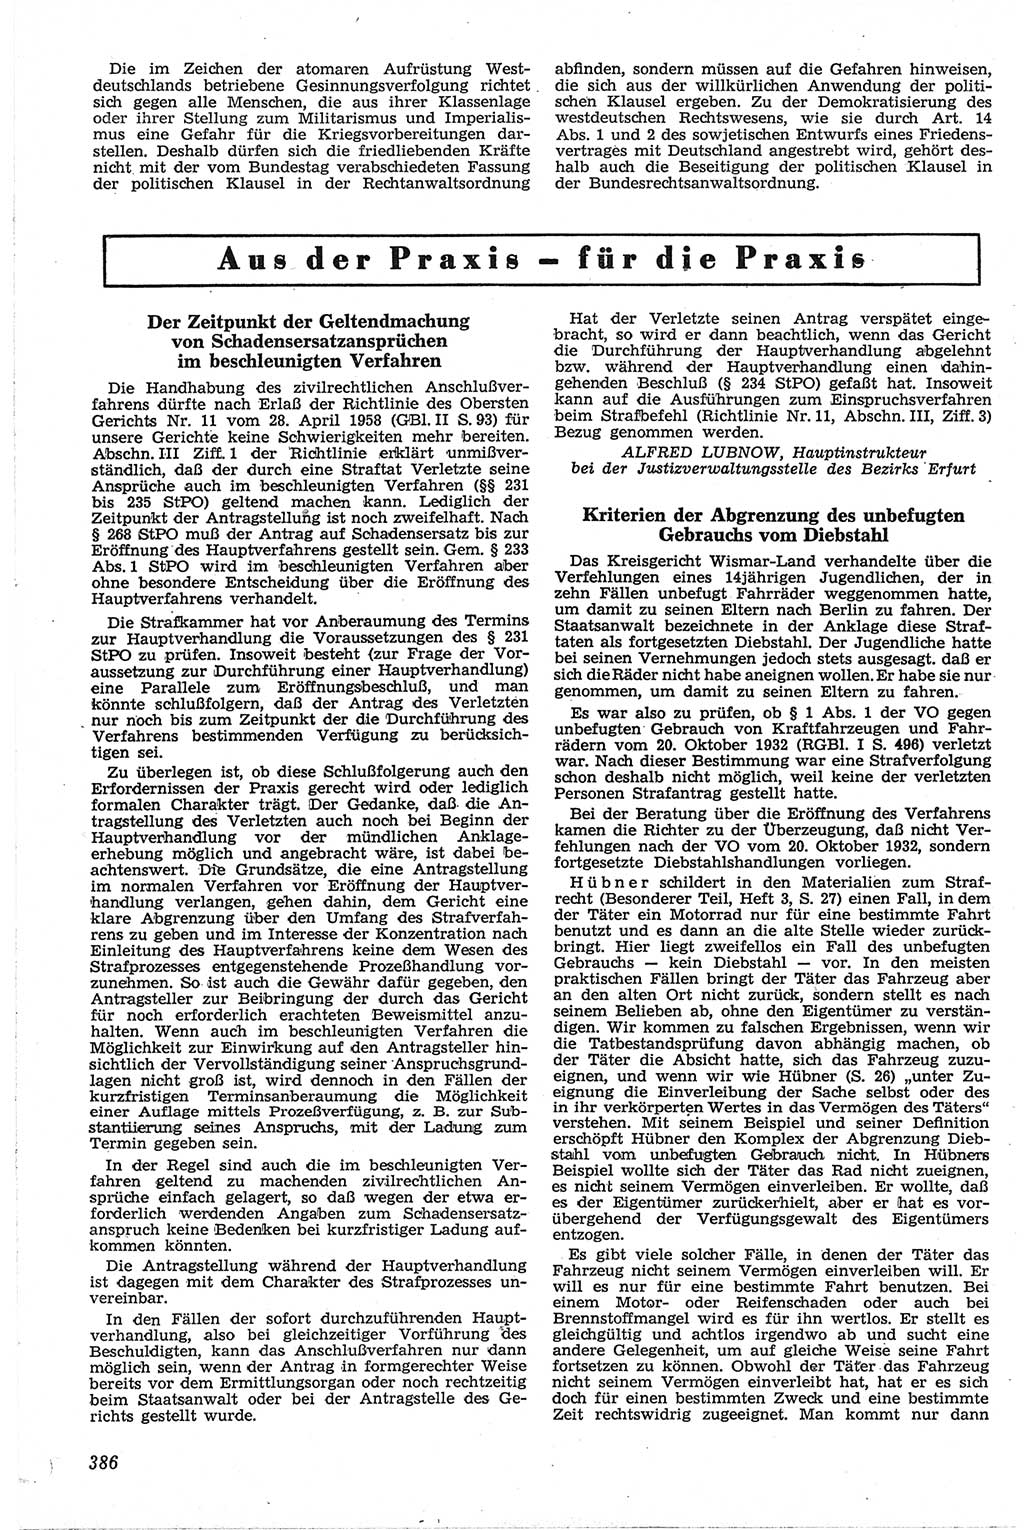 Neue Justiz (NJ), Zeitschrift für Recht und Rechtswissenschaft [Deutsche Demokratische Republik (DDR)], 13. Jahrgang 1959, Seite 386 (NJ DDR 1959, S. 386)